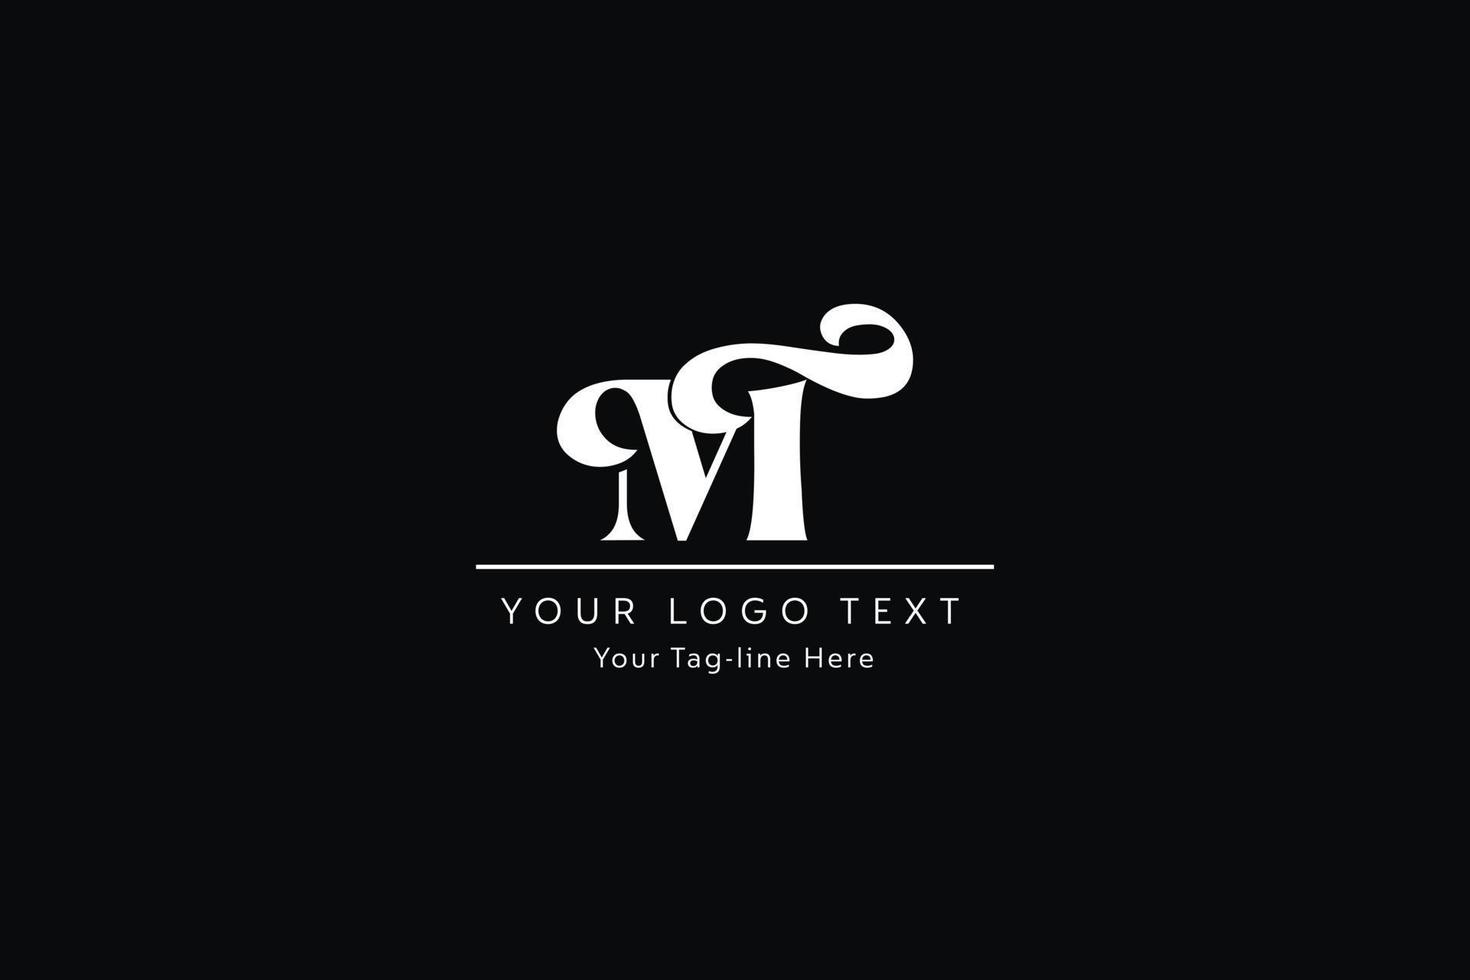 design del logo della lettera tm. illustrazione vettoriale creativa moderna dell'icona delle lettere tm.